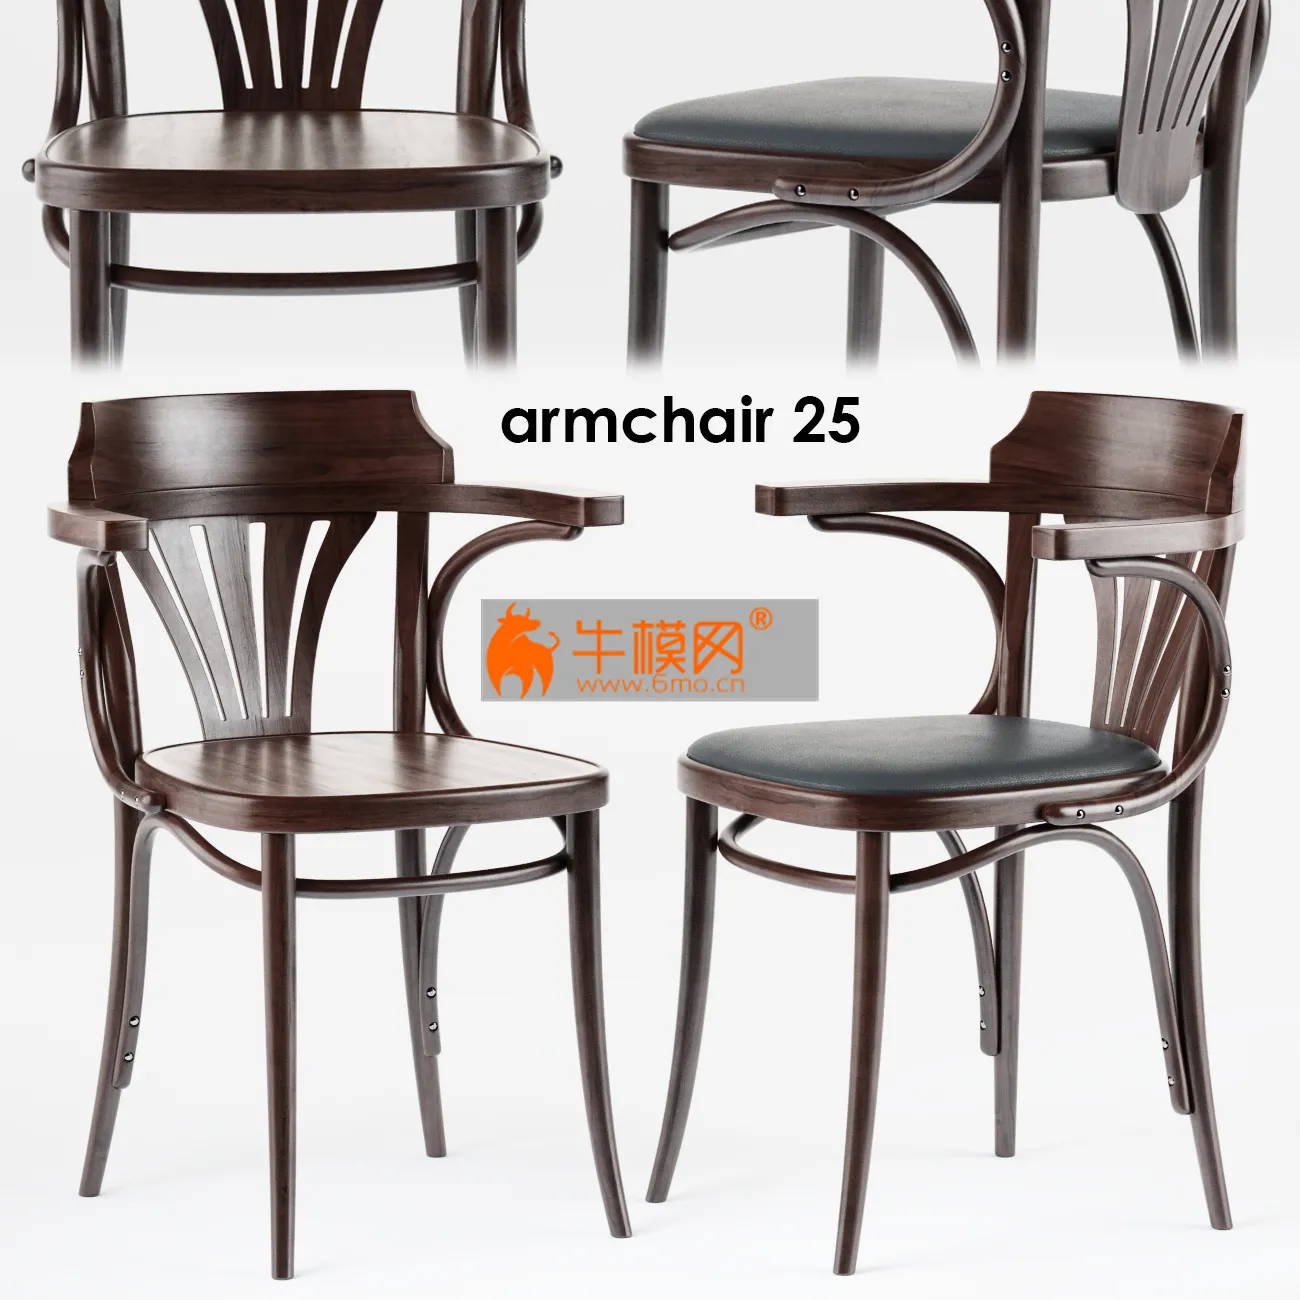 Armchair 25 – 3236